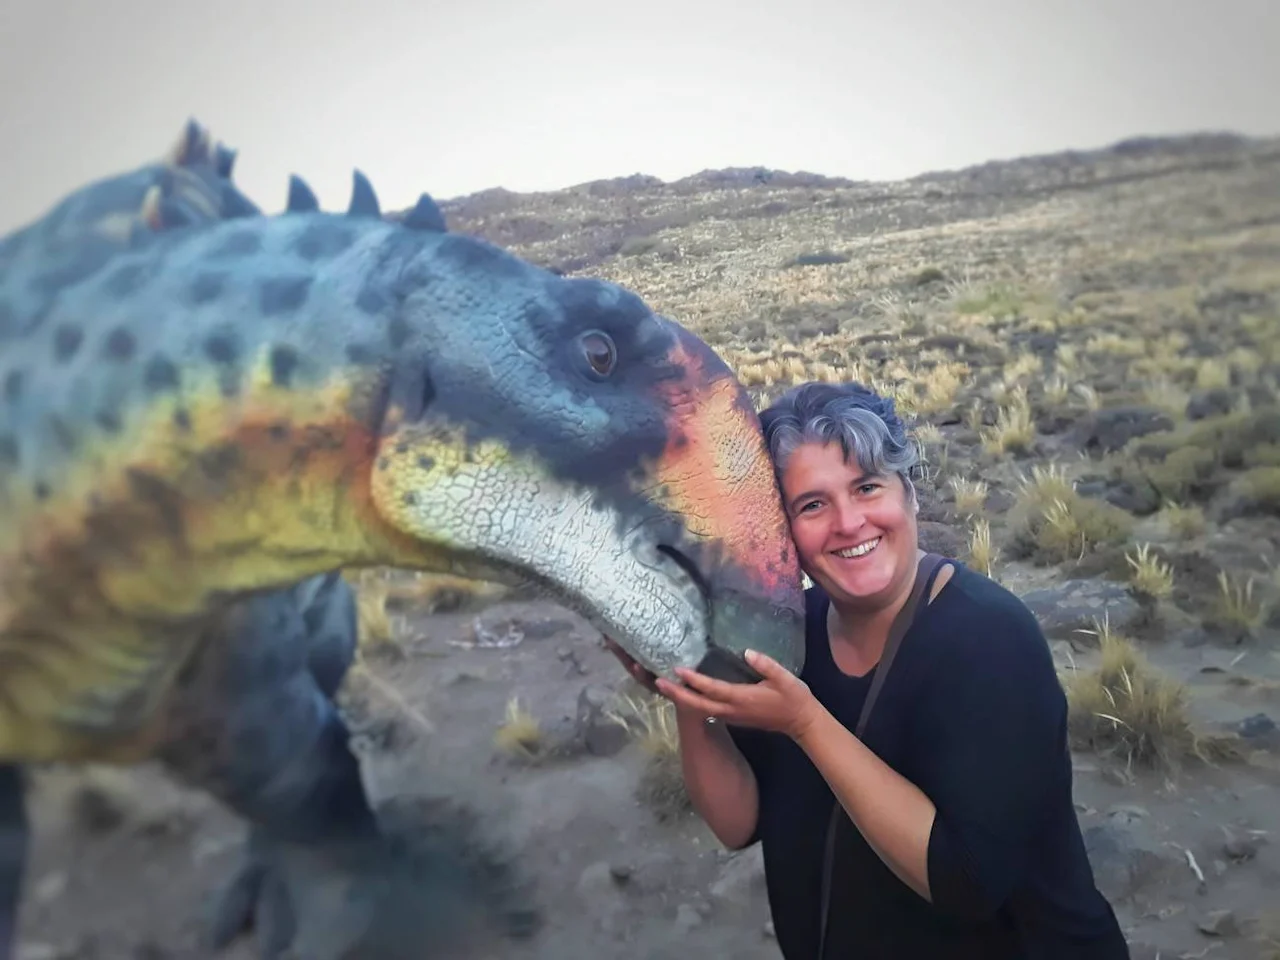 Morfología craneal y endocraneal de dinosaurios y otros reptiles extintos. La paleontóloga argentina Ariana Paulina Carabajal / Imagen: SINC